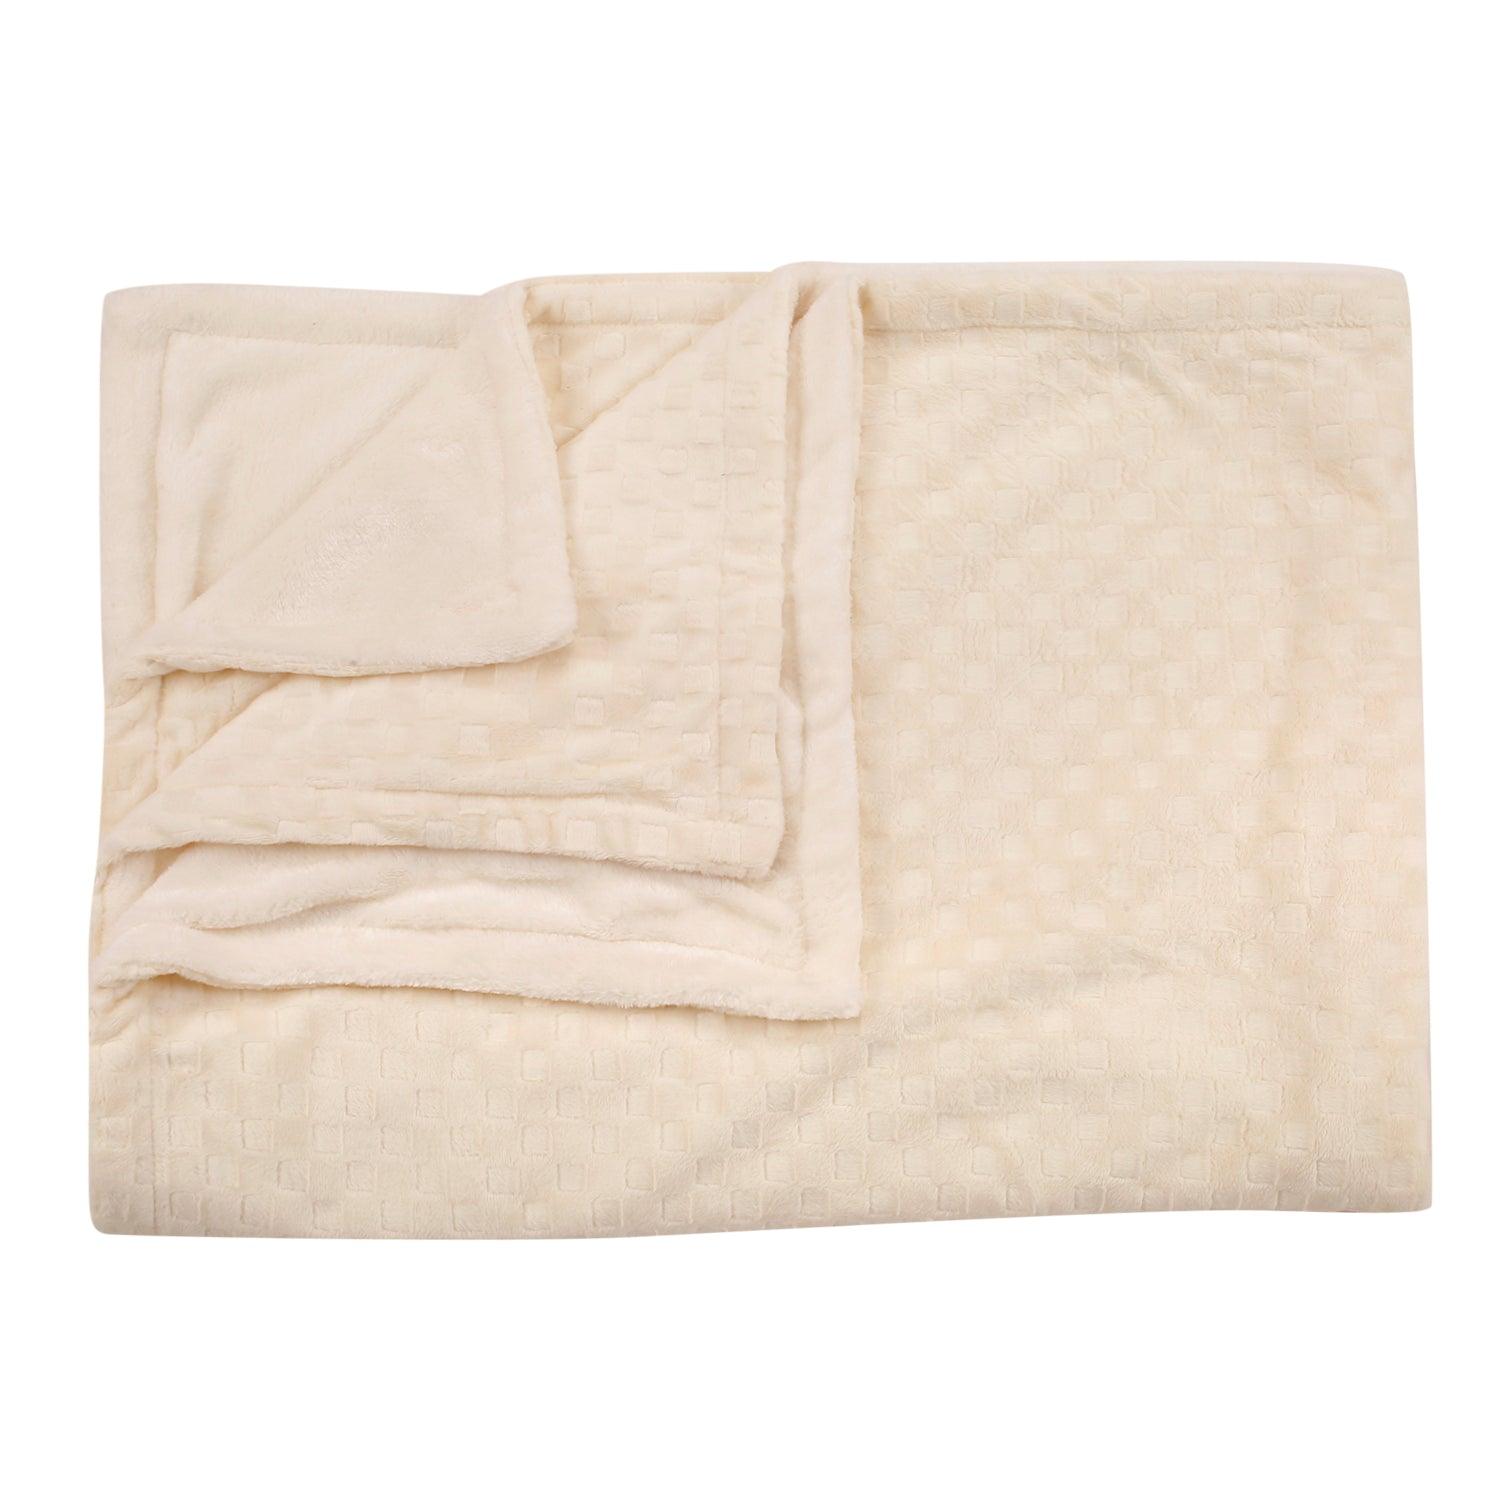 Chequered Cream Textured Beige Blanket